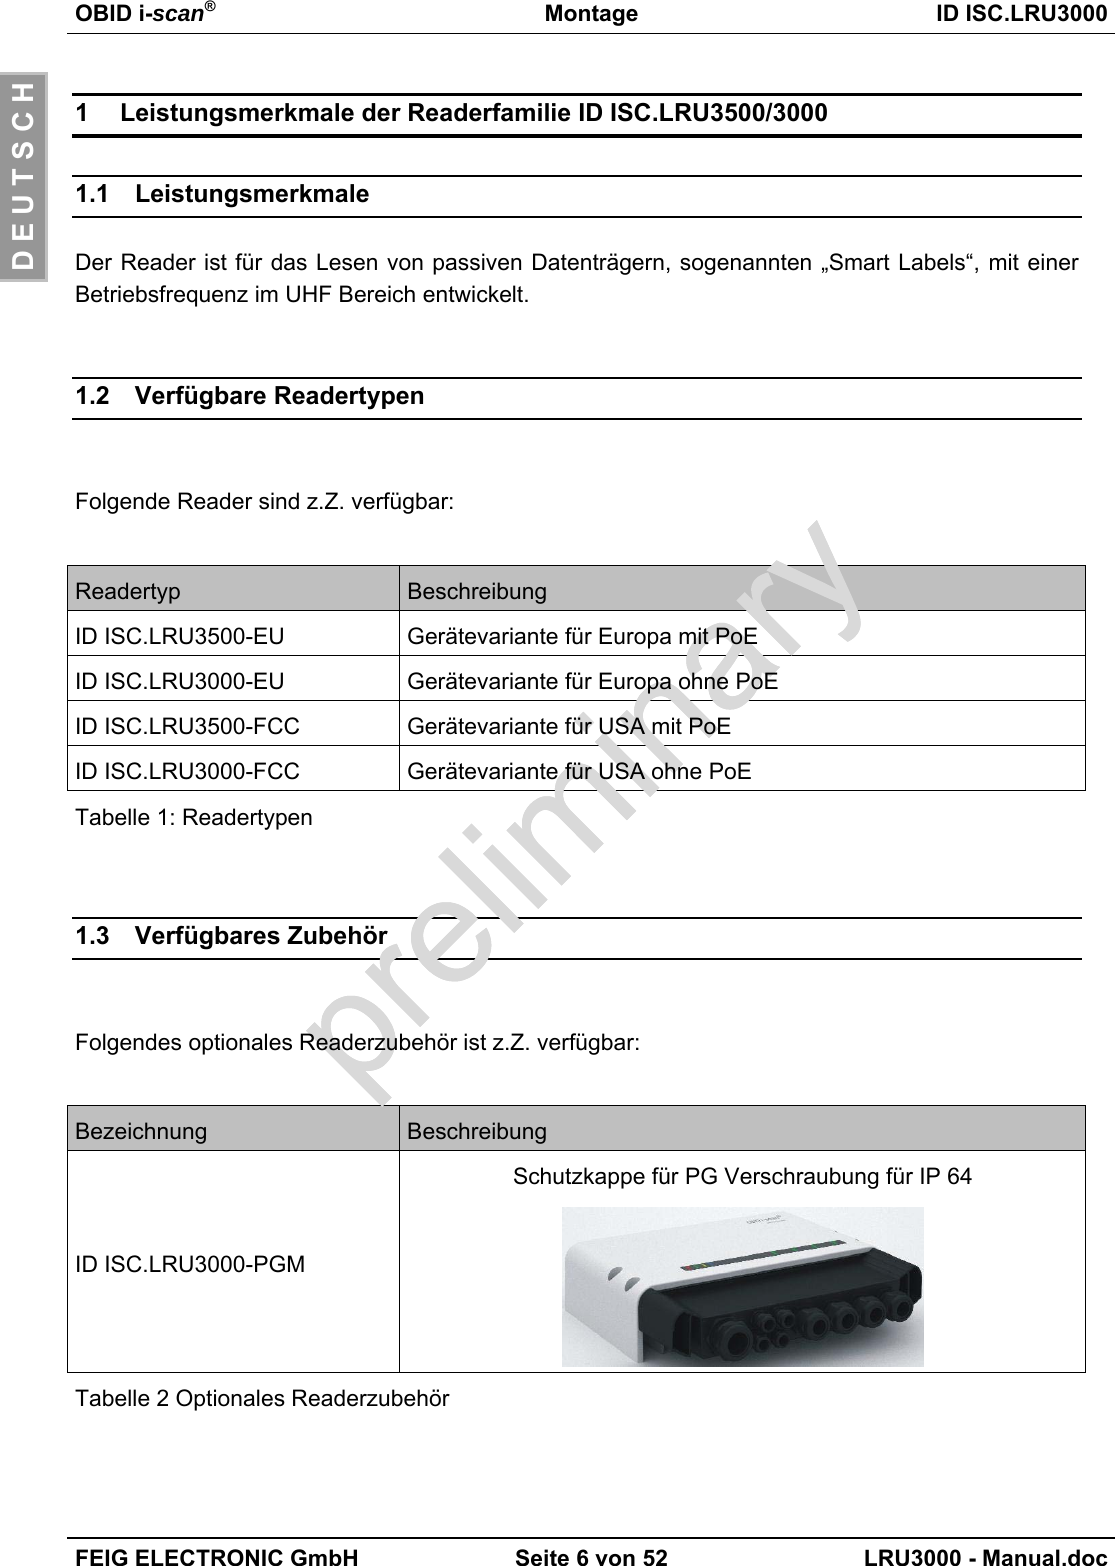 OBID i-scan®Montage ID ISC.LRU3000FEIG ELECTRONIC GmbH Seite 6 von 52 LRU3000 - Manual.docD E U T S C H1 Leistungsmerkmale der Readerfamilie ID ISC.LRU3500/30001.1 LeistungsmerkmaleDer Reader ist für das Lesen von passiven Datenträgern, sogenannten „Smart Labels“, mit einerBetriebsfrequenz im UHF Bereich entwickelt.1.2 Verfügbare ReadertypenFolgende Reader sind z.Z. verfügbar:Readertyp BeschreibungID ISC.LRU3500-EU Gerätevariante für Europa mit PoEID ISC.LRU3000-EU Gerätevariante für Europa ohne PoEID ISC.LRU3500-FCC Gerätevariante für USA mit PoEID ISC.LRU3000-FCC Gerätevariante für USA ohne PoETabelle 1: Readertypen1.3 Verfügbares ZubehörFolgendes optionales Readerzubehör ist z.Z. verfügbar:Bezeichnung BeschreibungID ISC.LRU3000-PGMSchutzkappe für PG Verschraubung für IP 64Tabelle 2 Optionales Readerzubehör